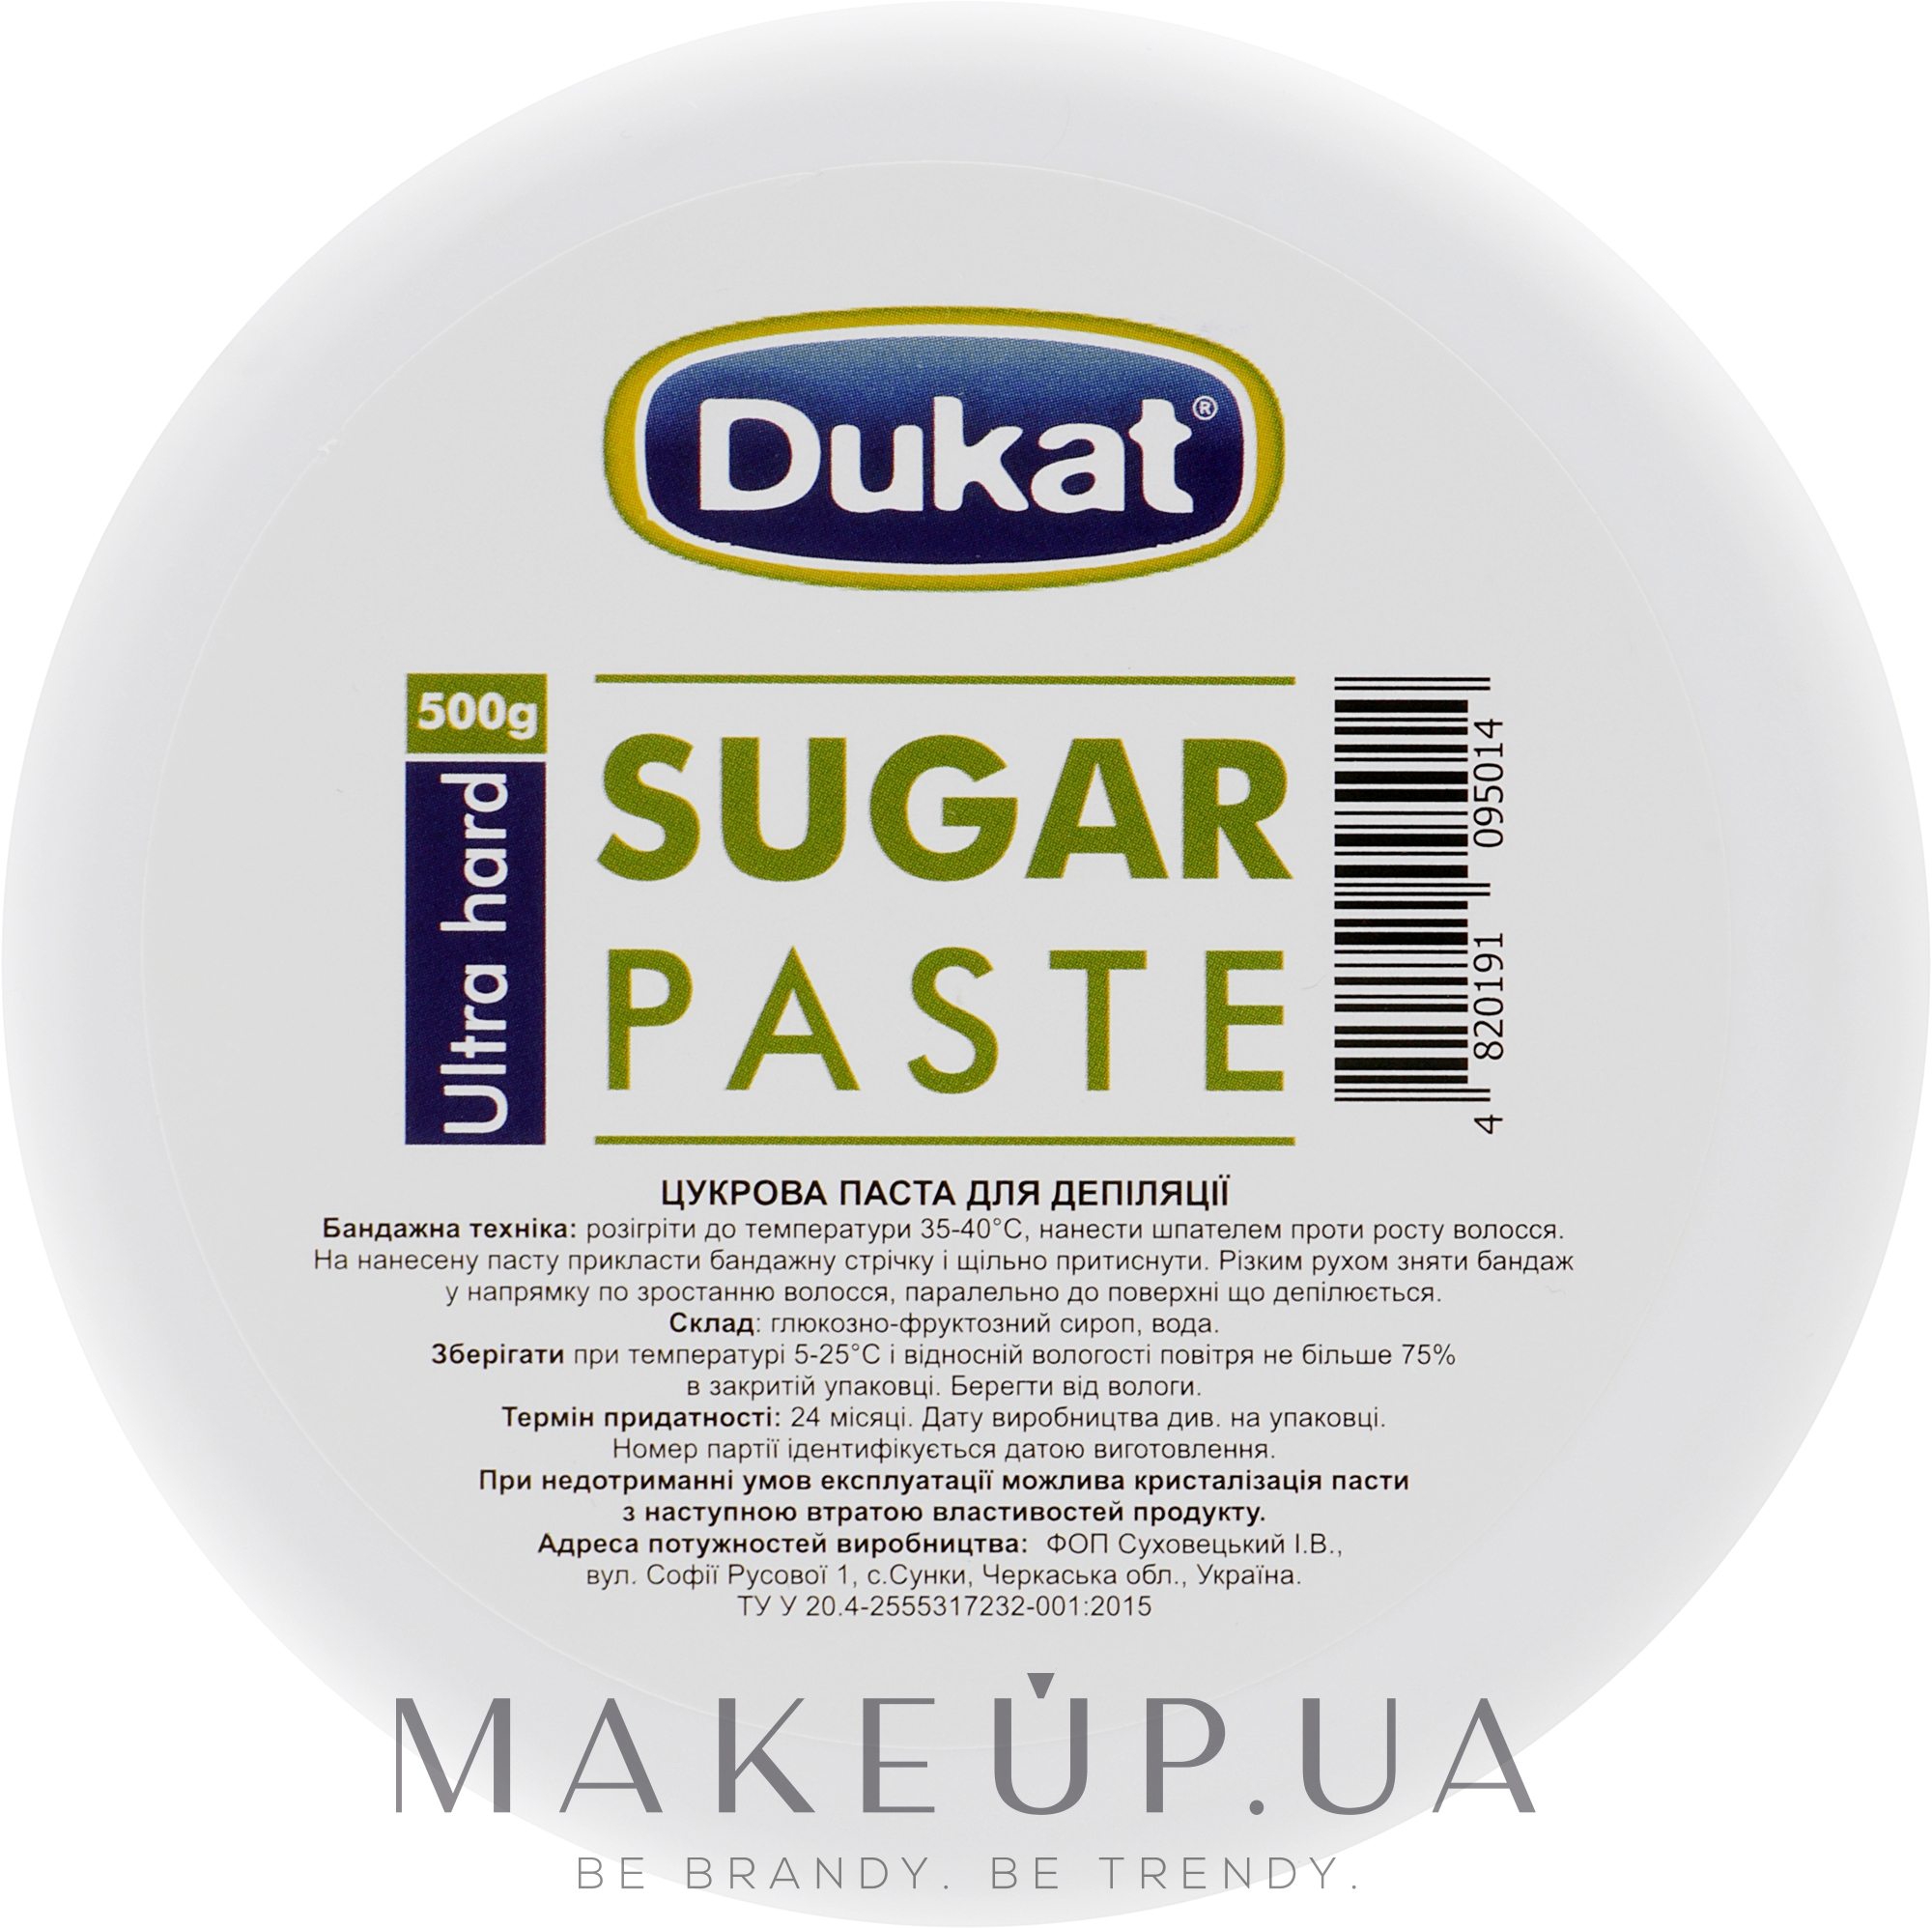 Сахарная паста для депиляции ультра твердая - Dukat Sugar Paste Extr — фото 500g